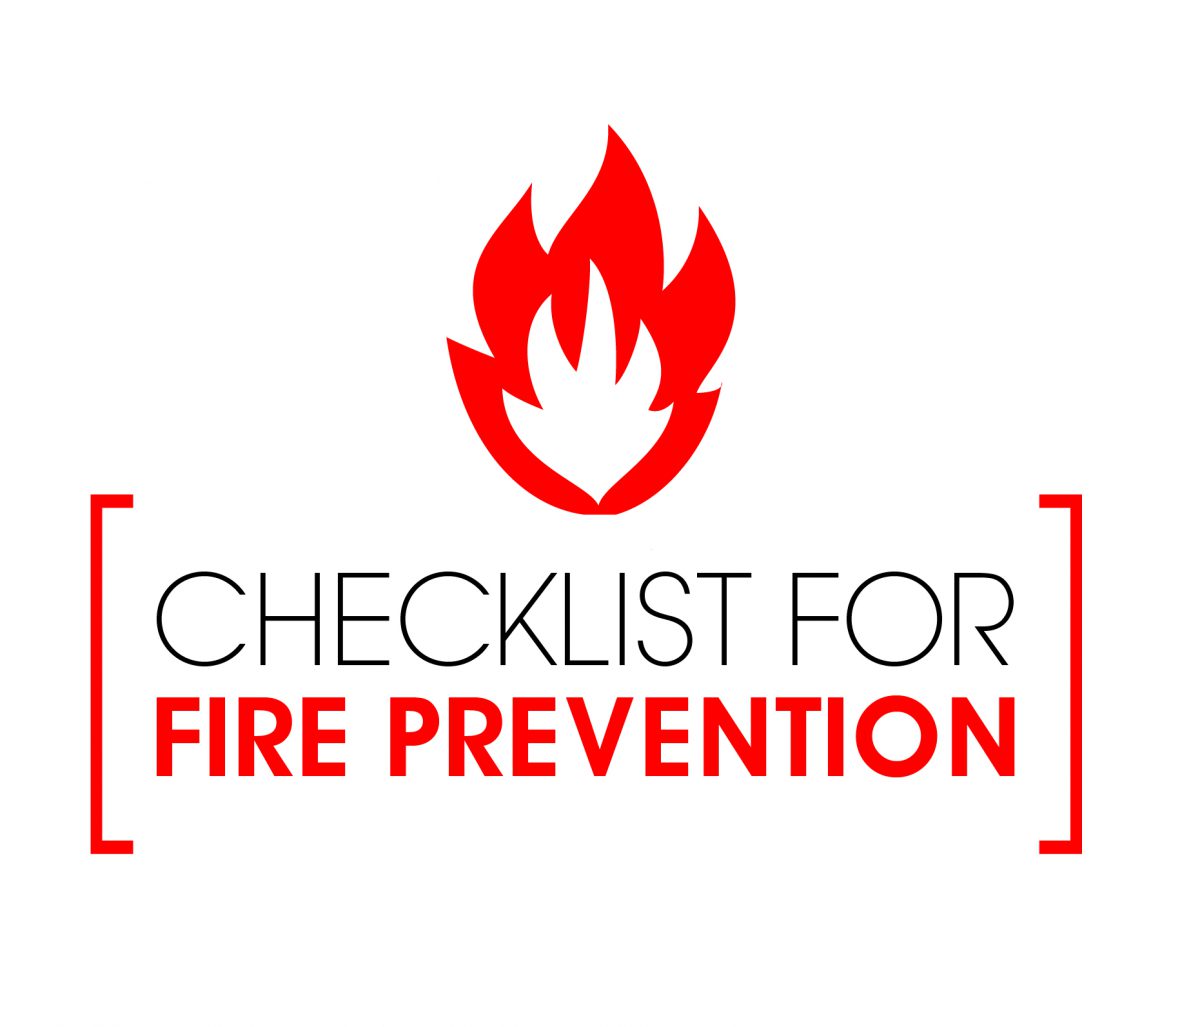 Fire Prevention Checklist